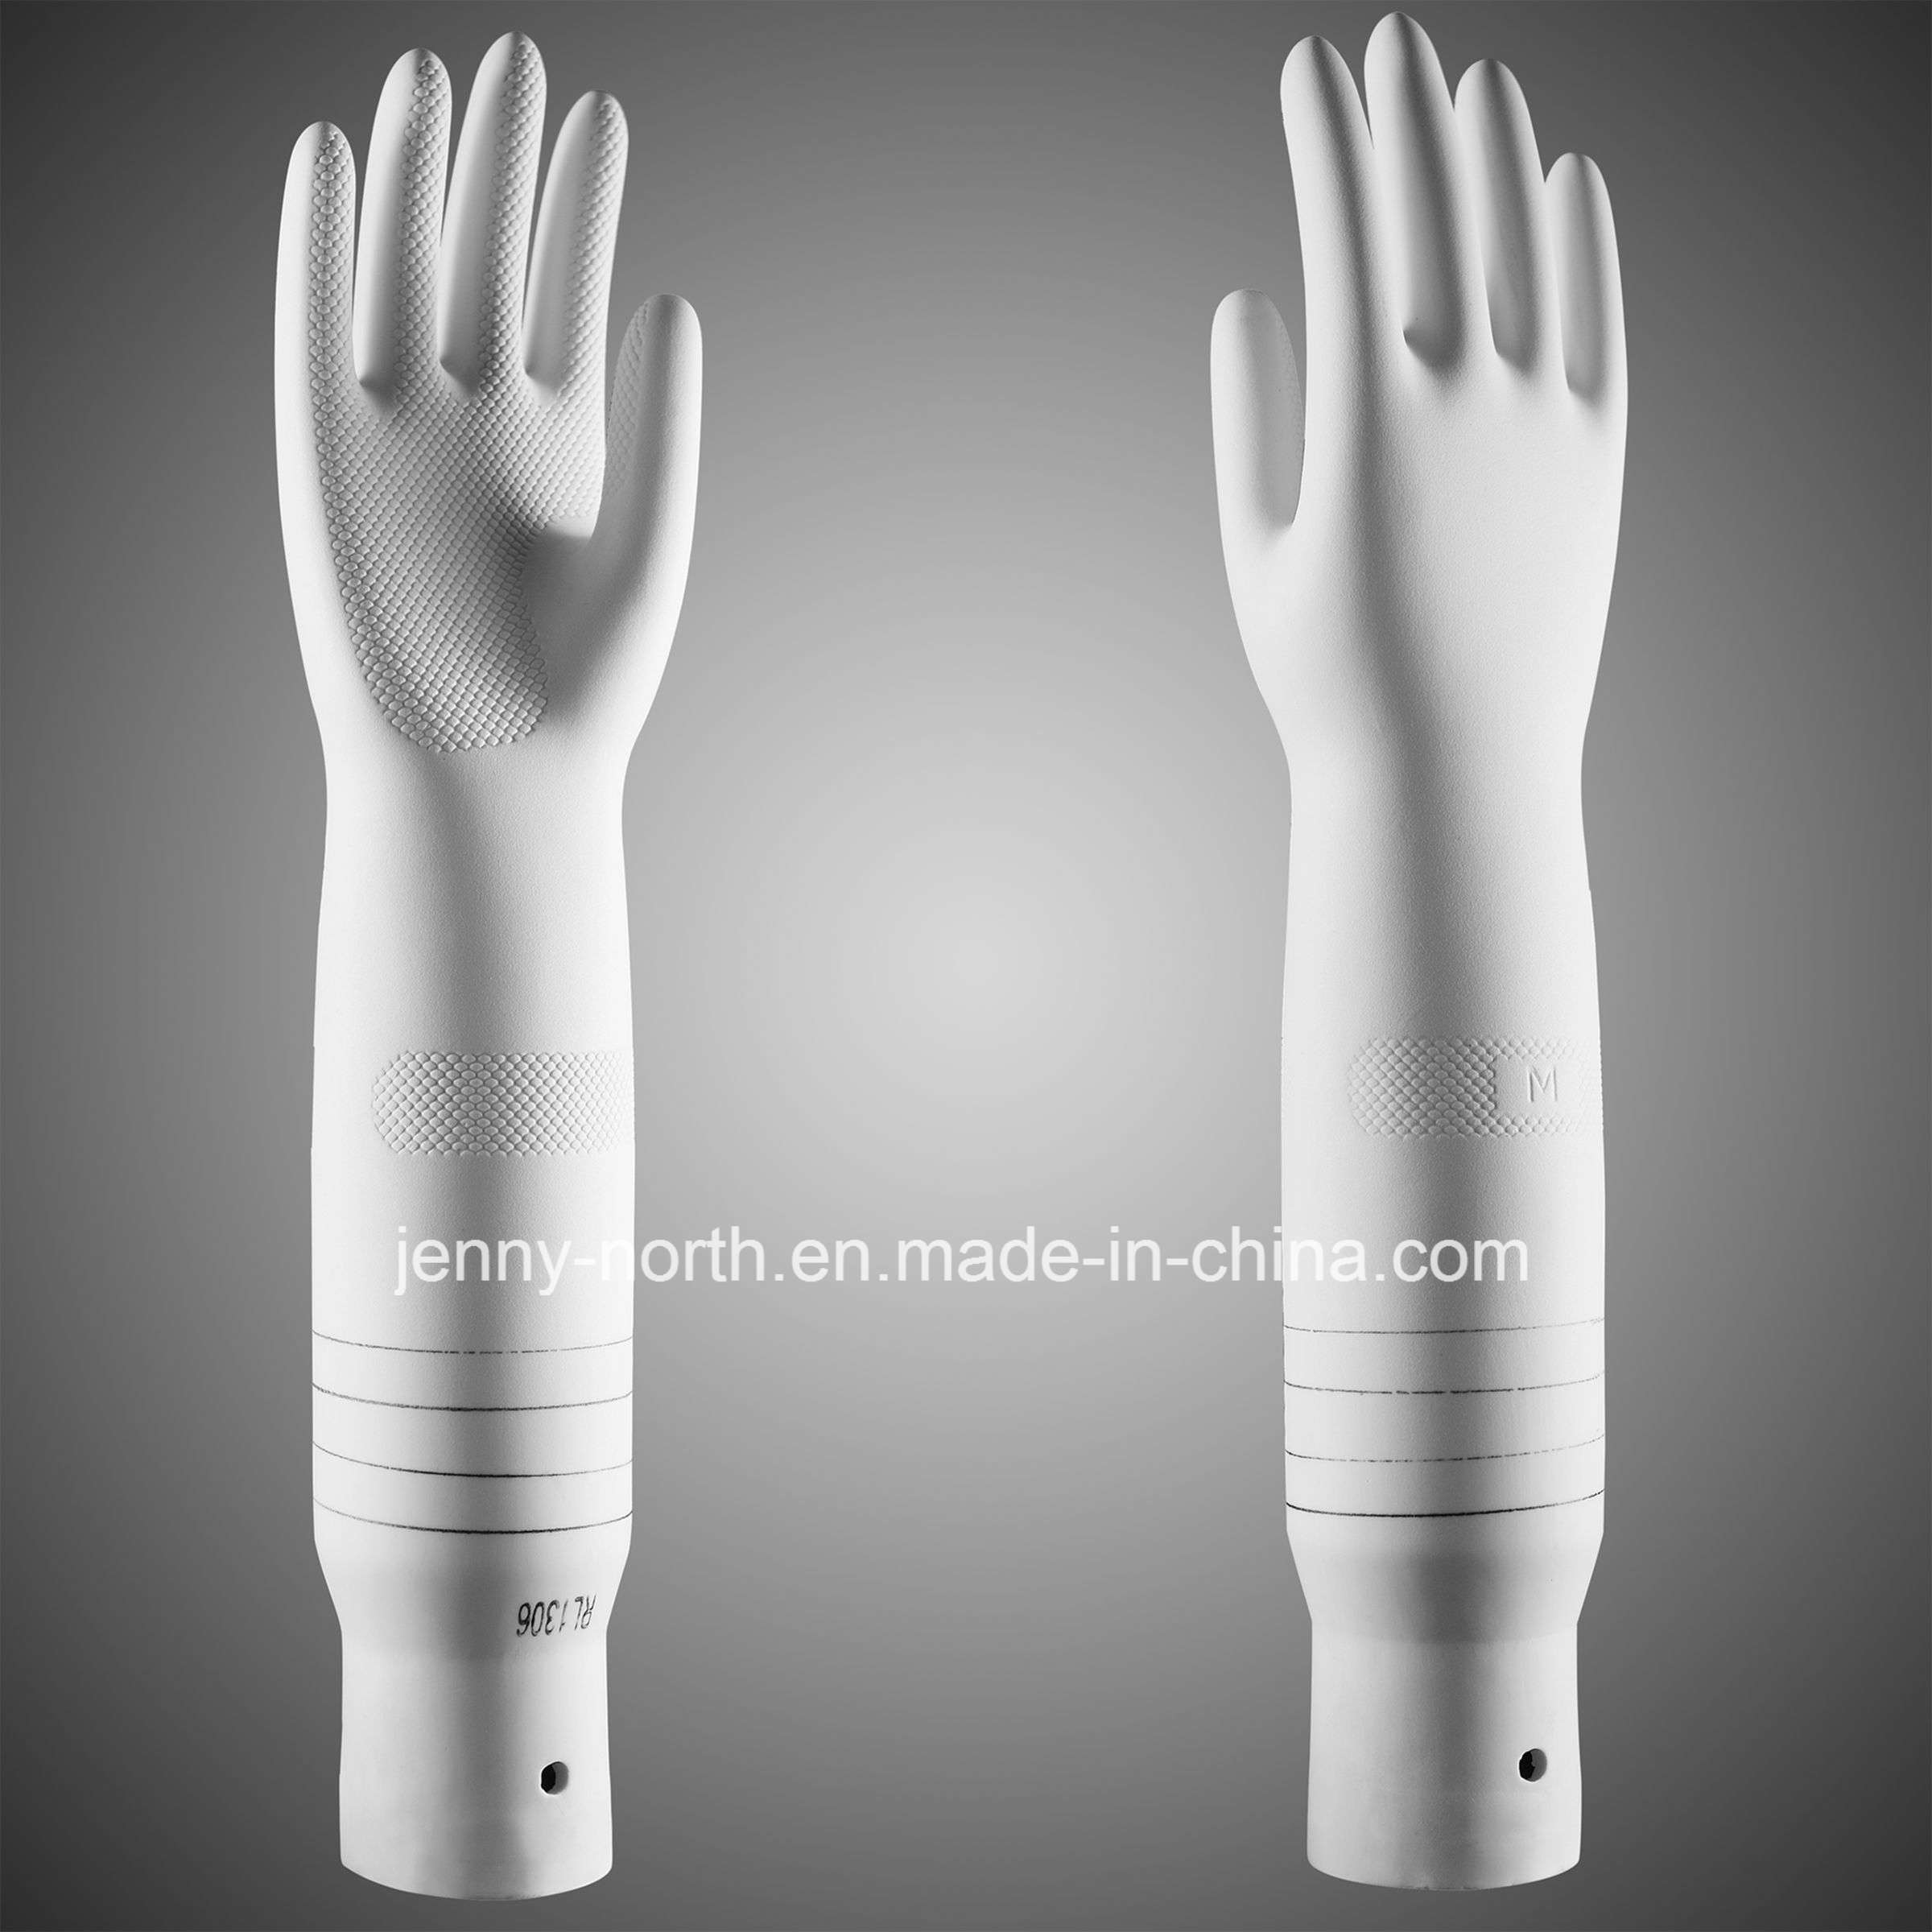 Ripple Ceramic Former for Household Gloves